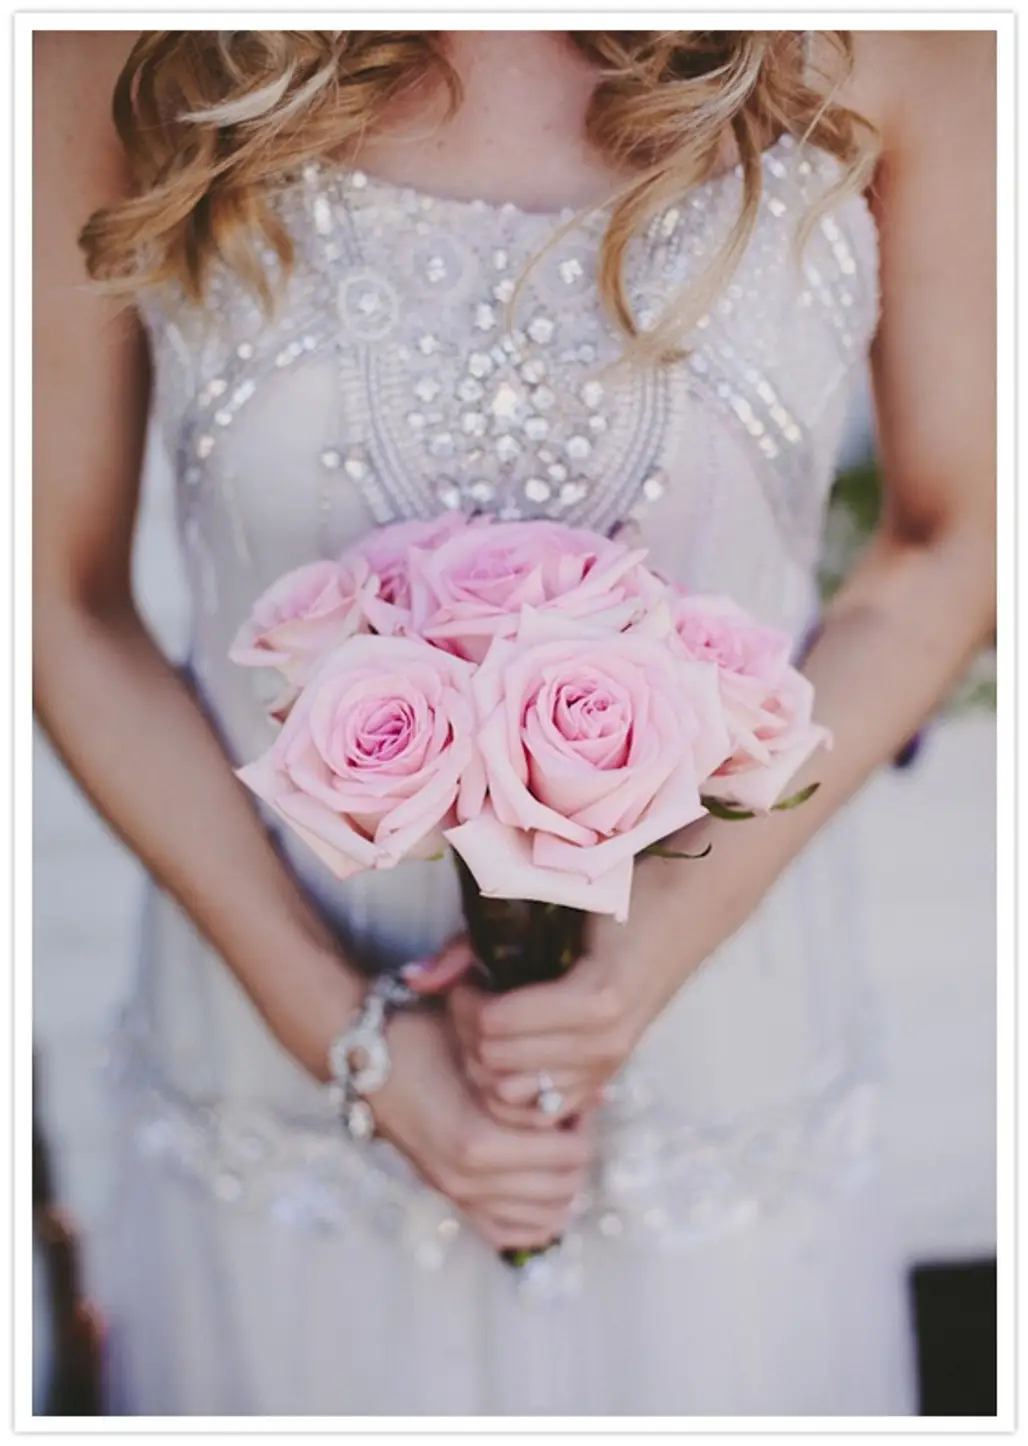 A Bride's Design Glitter Wedding Dress...